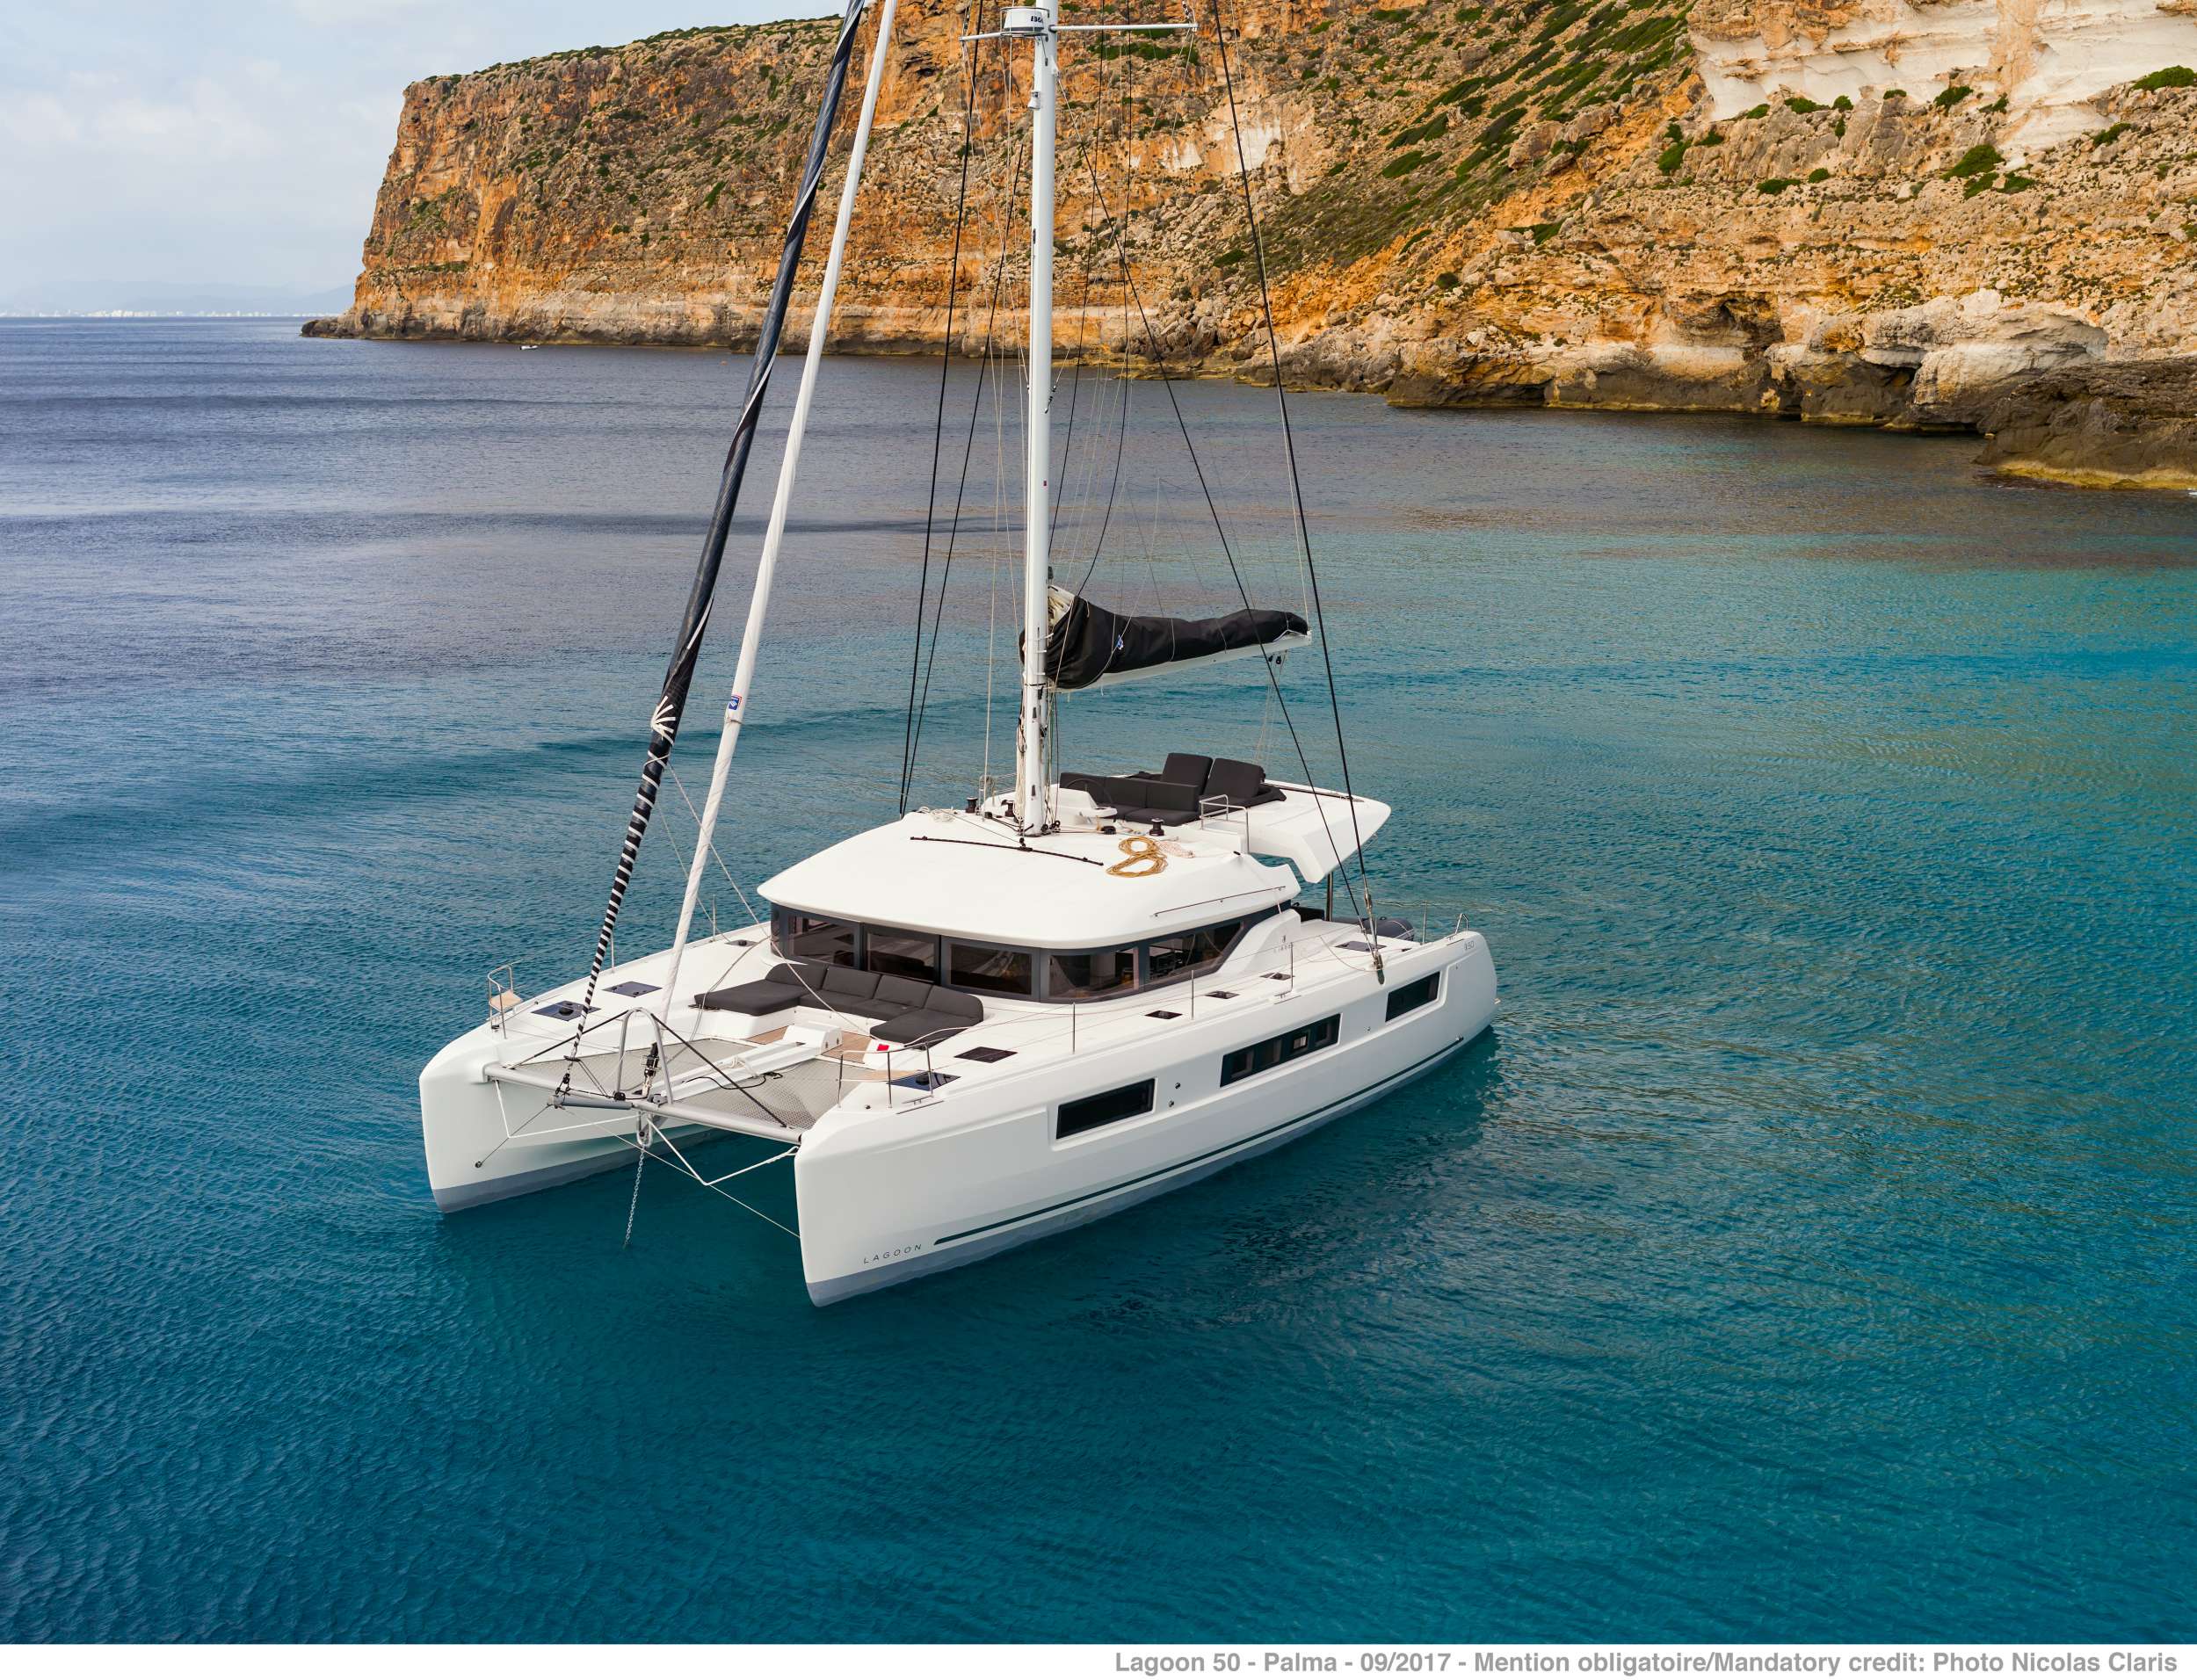 ONEIDA 2 - Luxury yacht charter worldwide & Boat hire in Greece 1